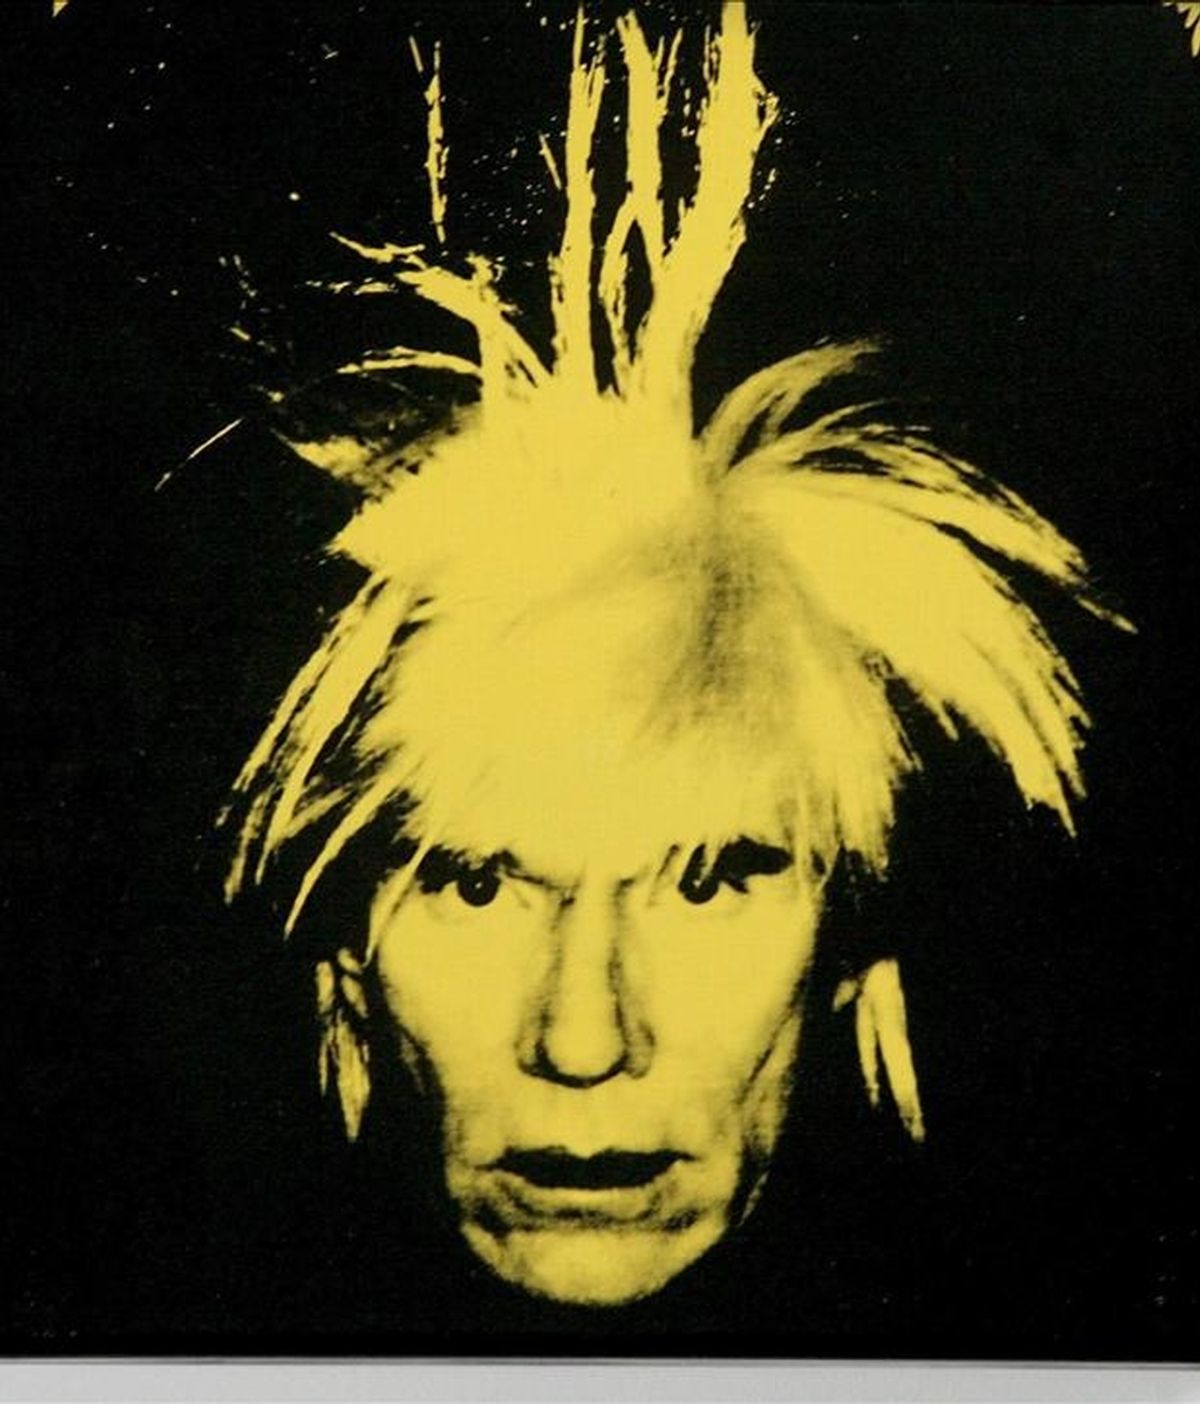 Warhol (1928-1987), que protagonizará algunas de las subastas de arte moderno y contemporáneo que tendrán lugar en mayo próximo en Nueva York, se mudó en los años sesenta con su madre a esa casa unifamiliar de cuatro plantas, cuatro dormitorios y tres baños. EFE/Archivo